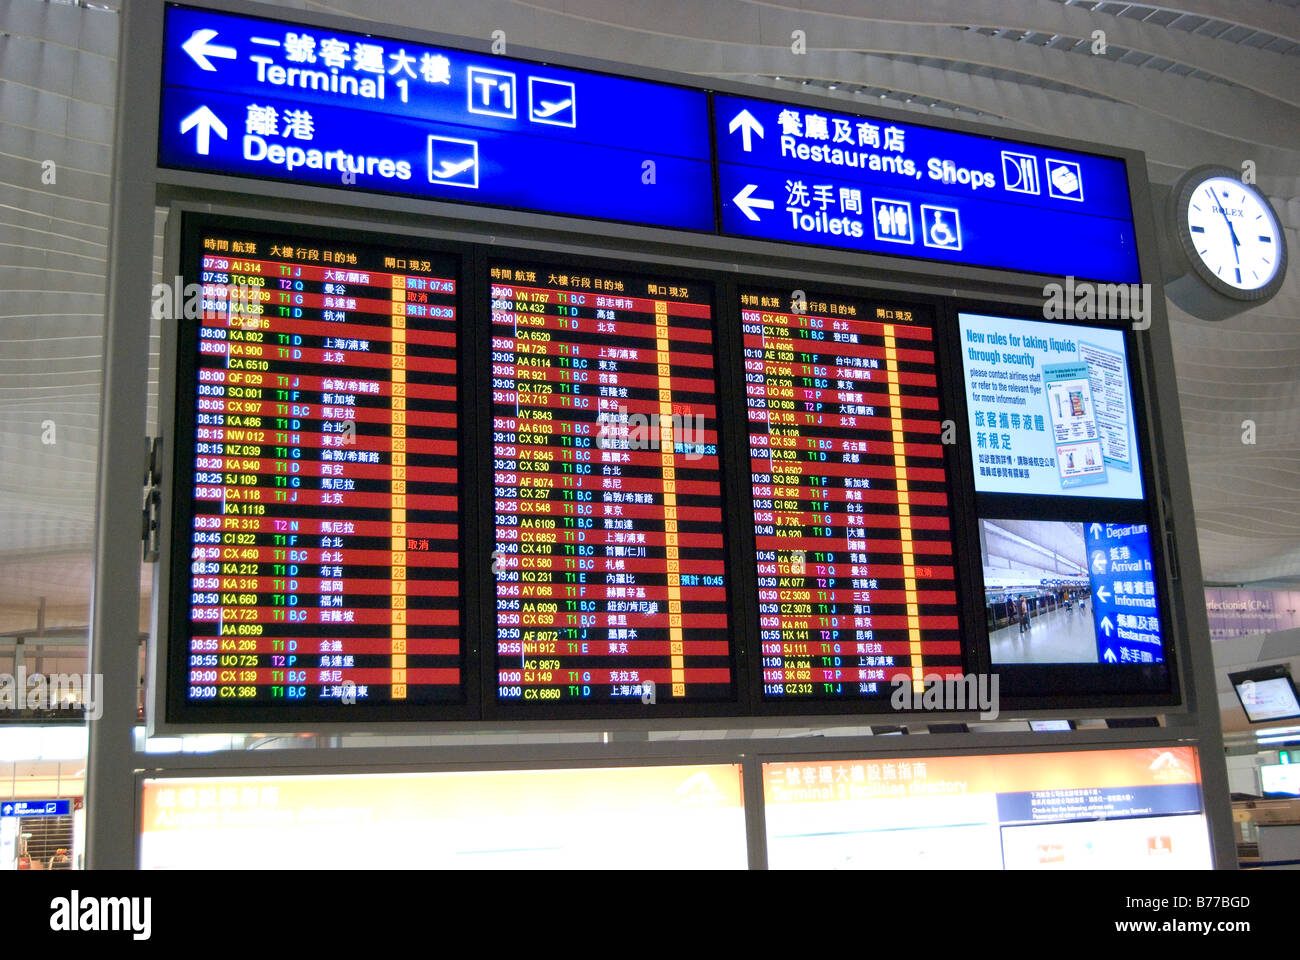 Illuminata scheda di partenza, terminale.2, l'Aeroporto Internazionale di Hong Kong, l'Isola di Lantau, Hong Kong, Repubblica Popolare di Cina Foto Stock